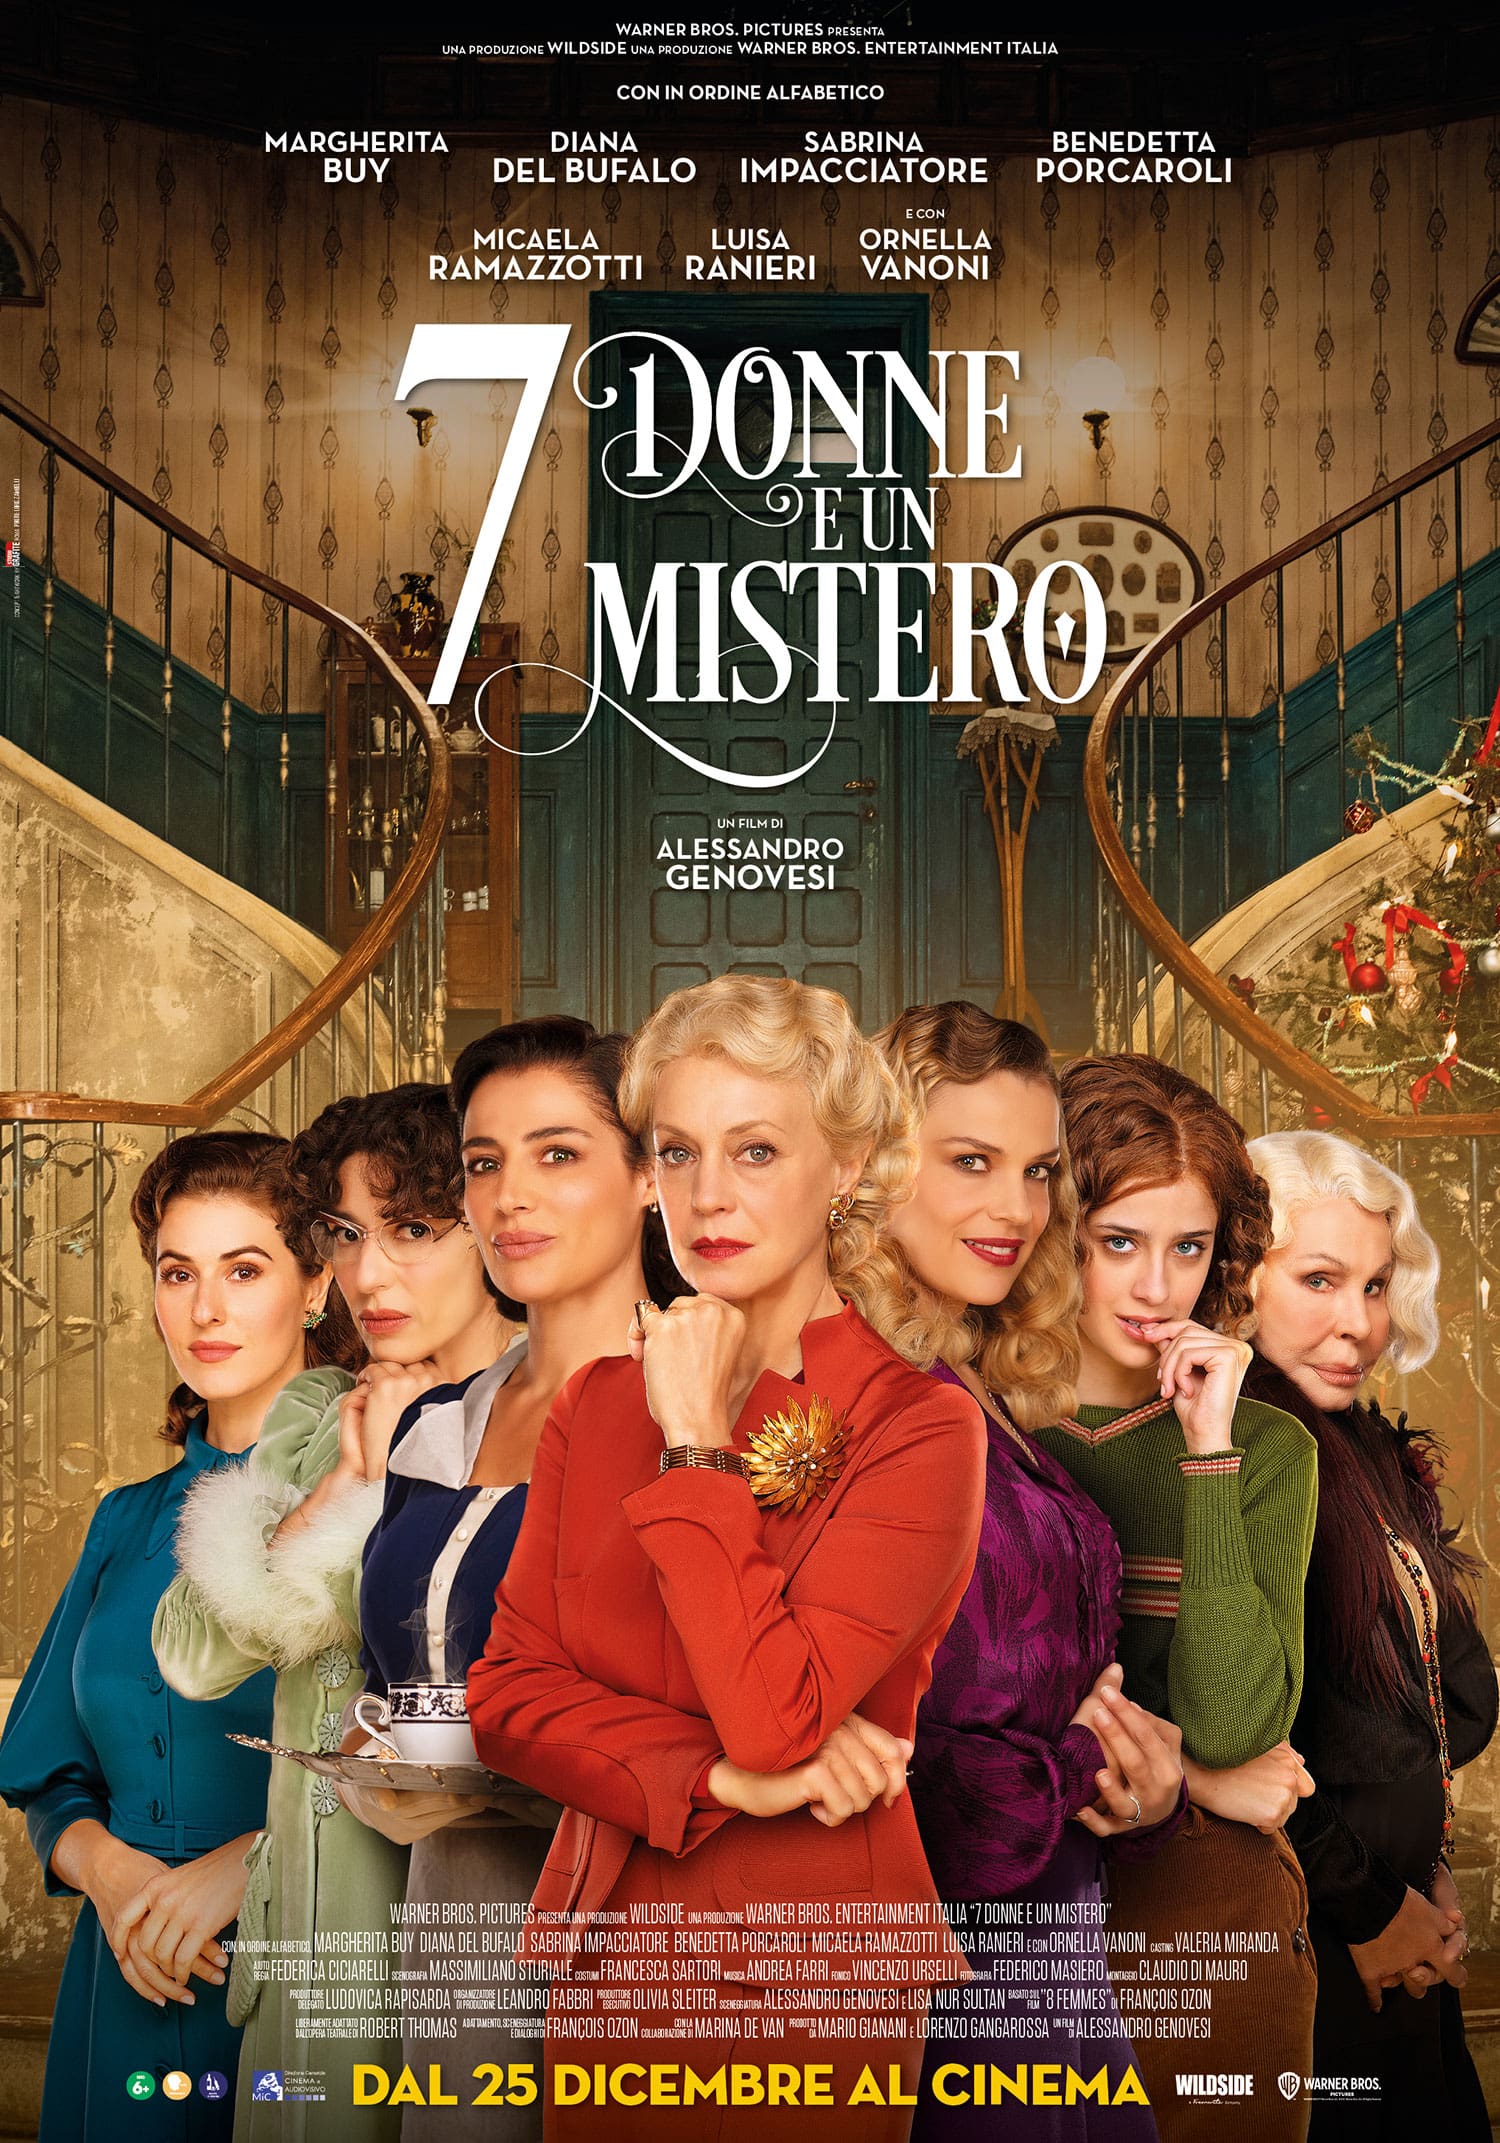 7 Donne e un Mistero dal 25 Dicembre al cinema il nuovo film di Alessandro Genovesi, prodotto da Wildside e distribuito da Warner Bros. Italia.